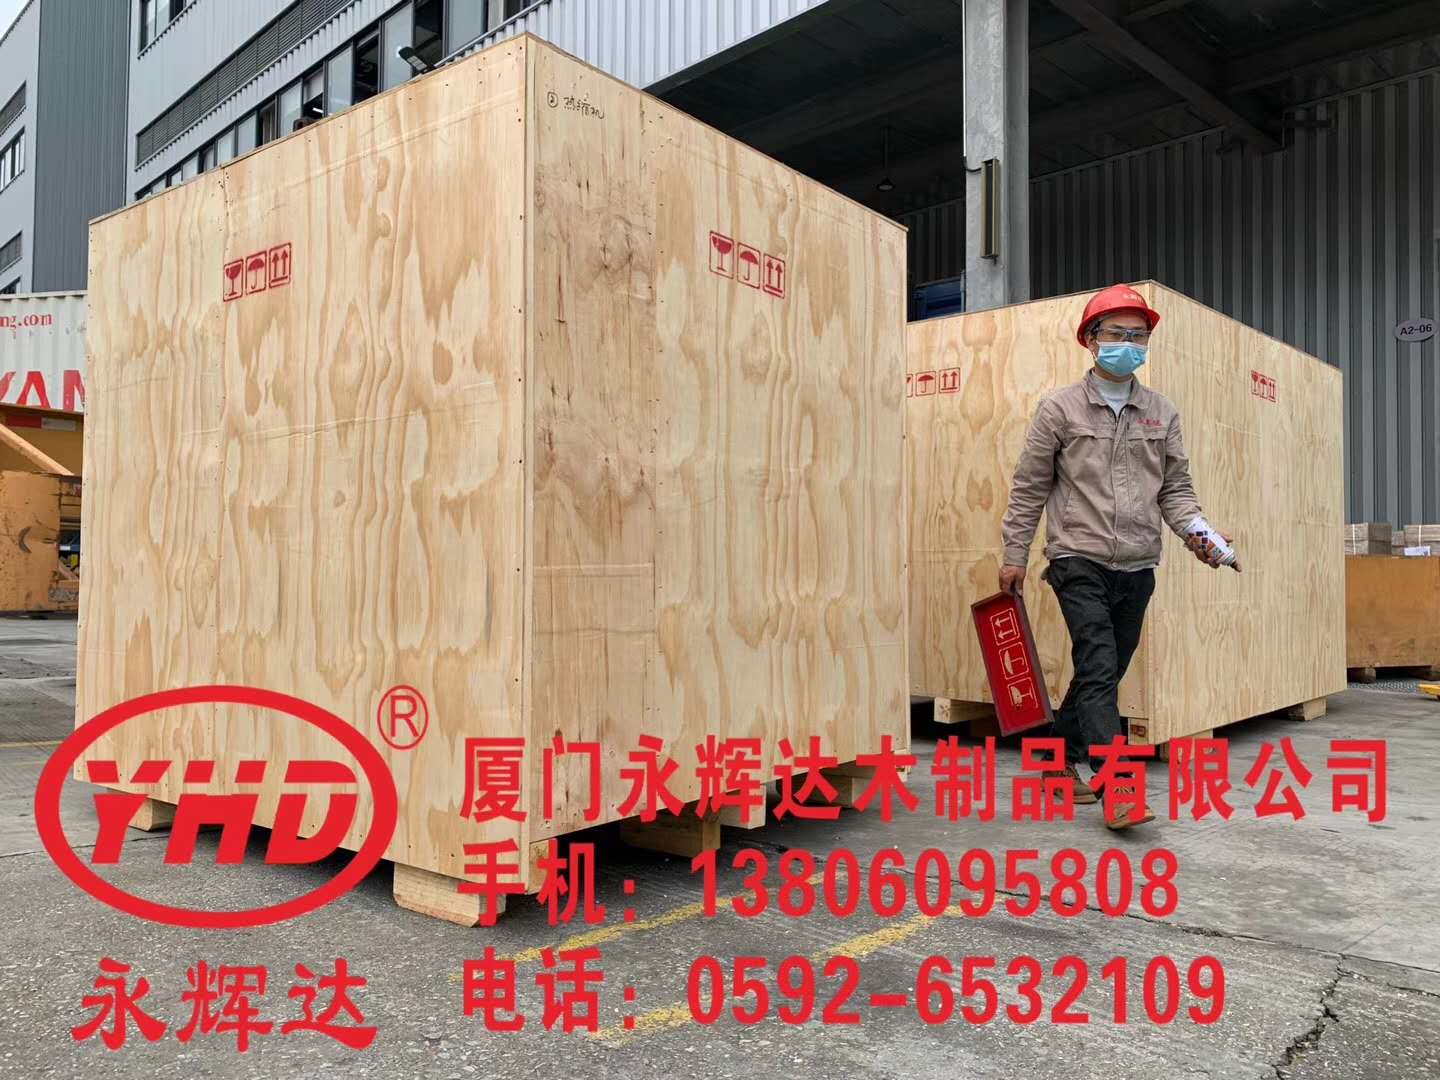 电气设备包装箱-厦门重型设备包装箱制造商